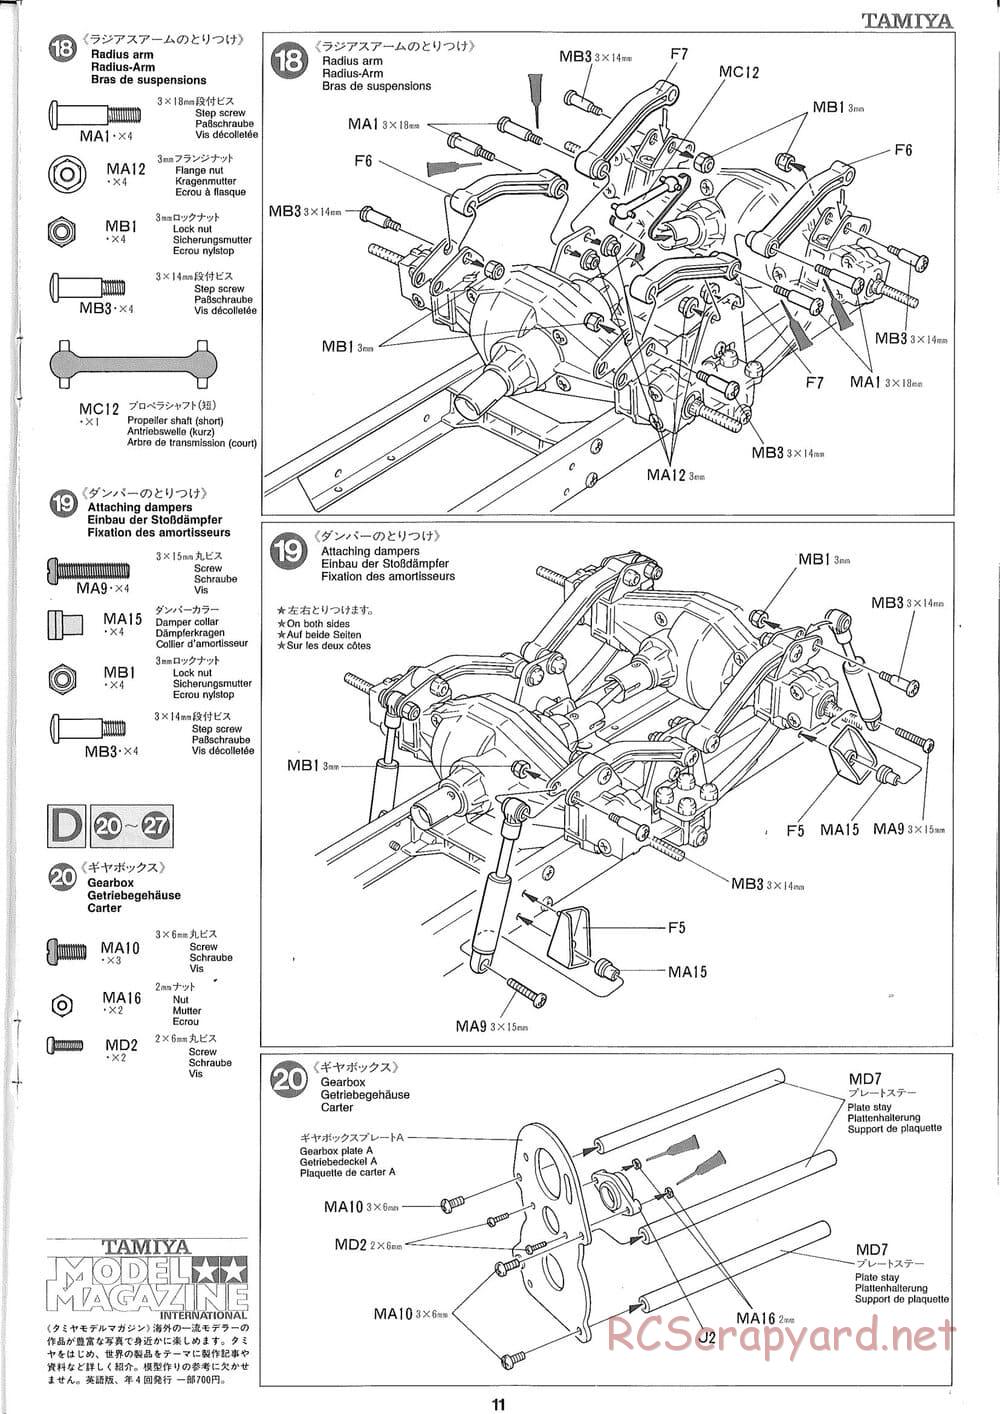 Tamiya - Ford Aeromax - Manual - Page 11